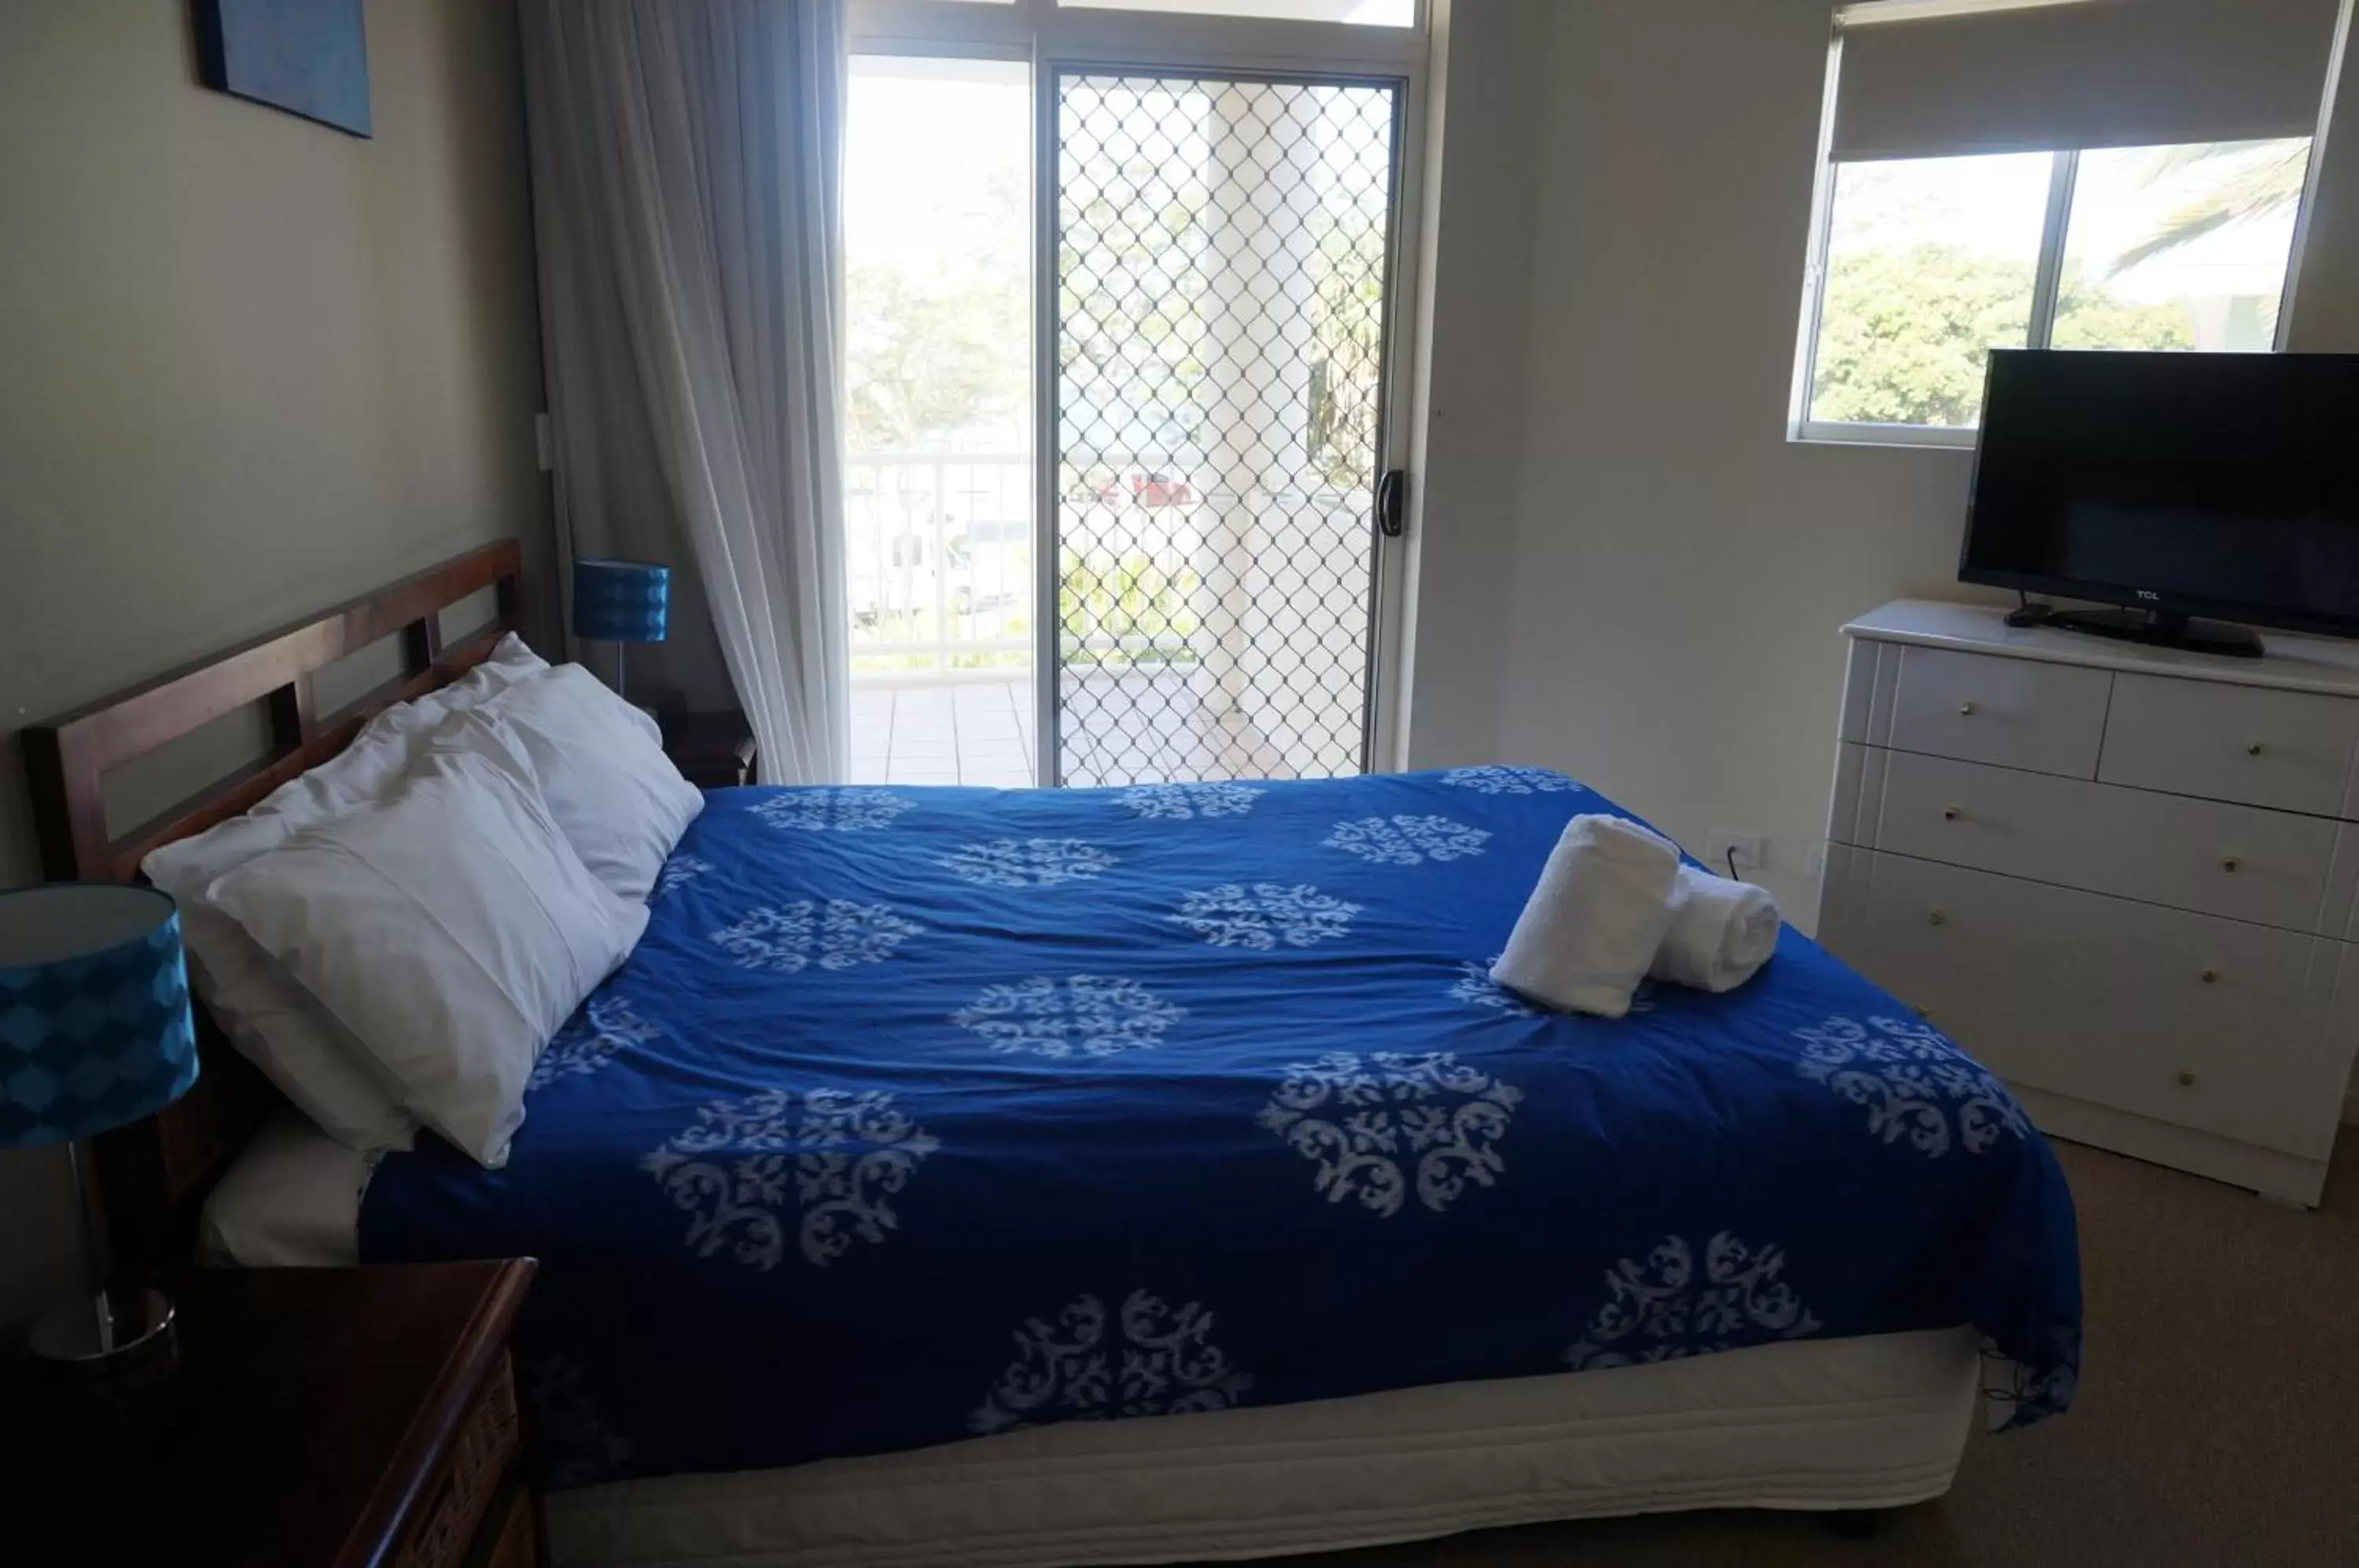 Bedroom, Room Photo in Moorings Beach Resort